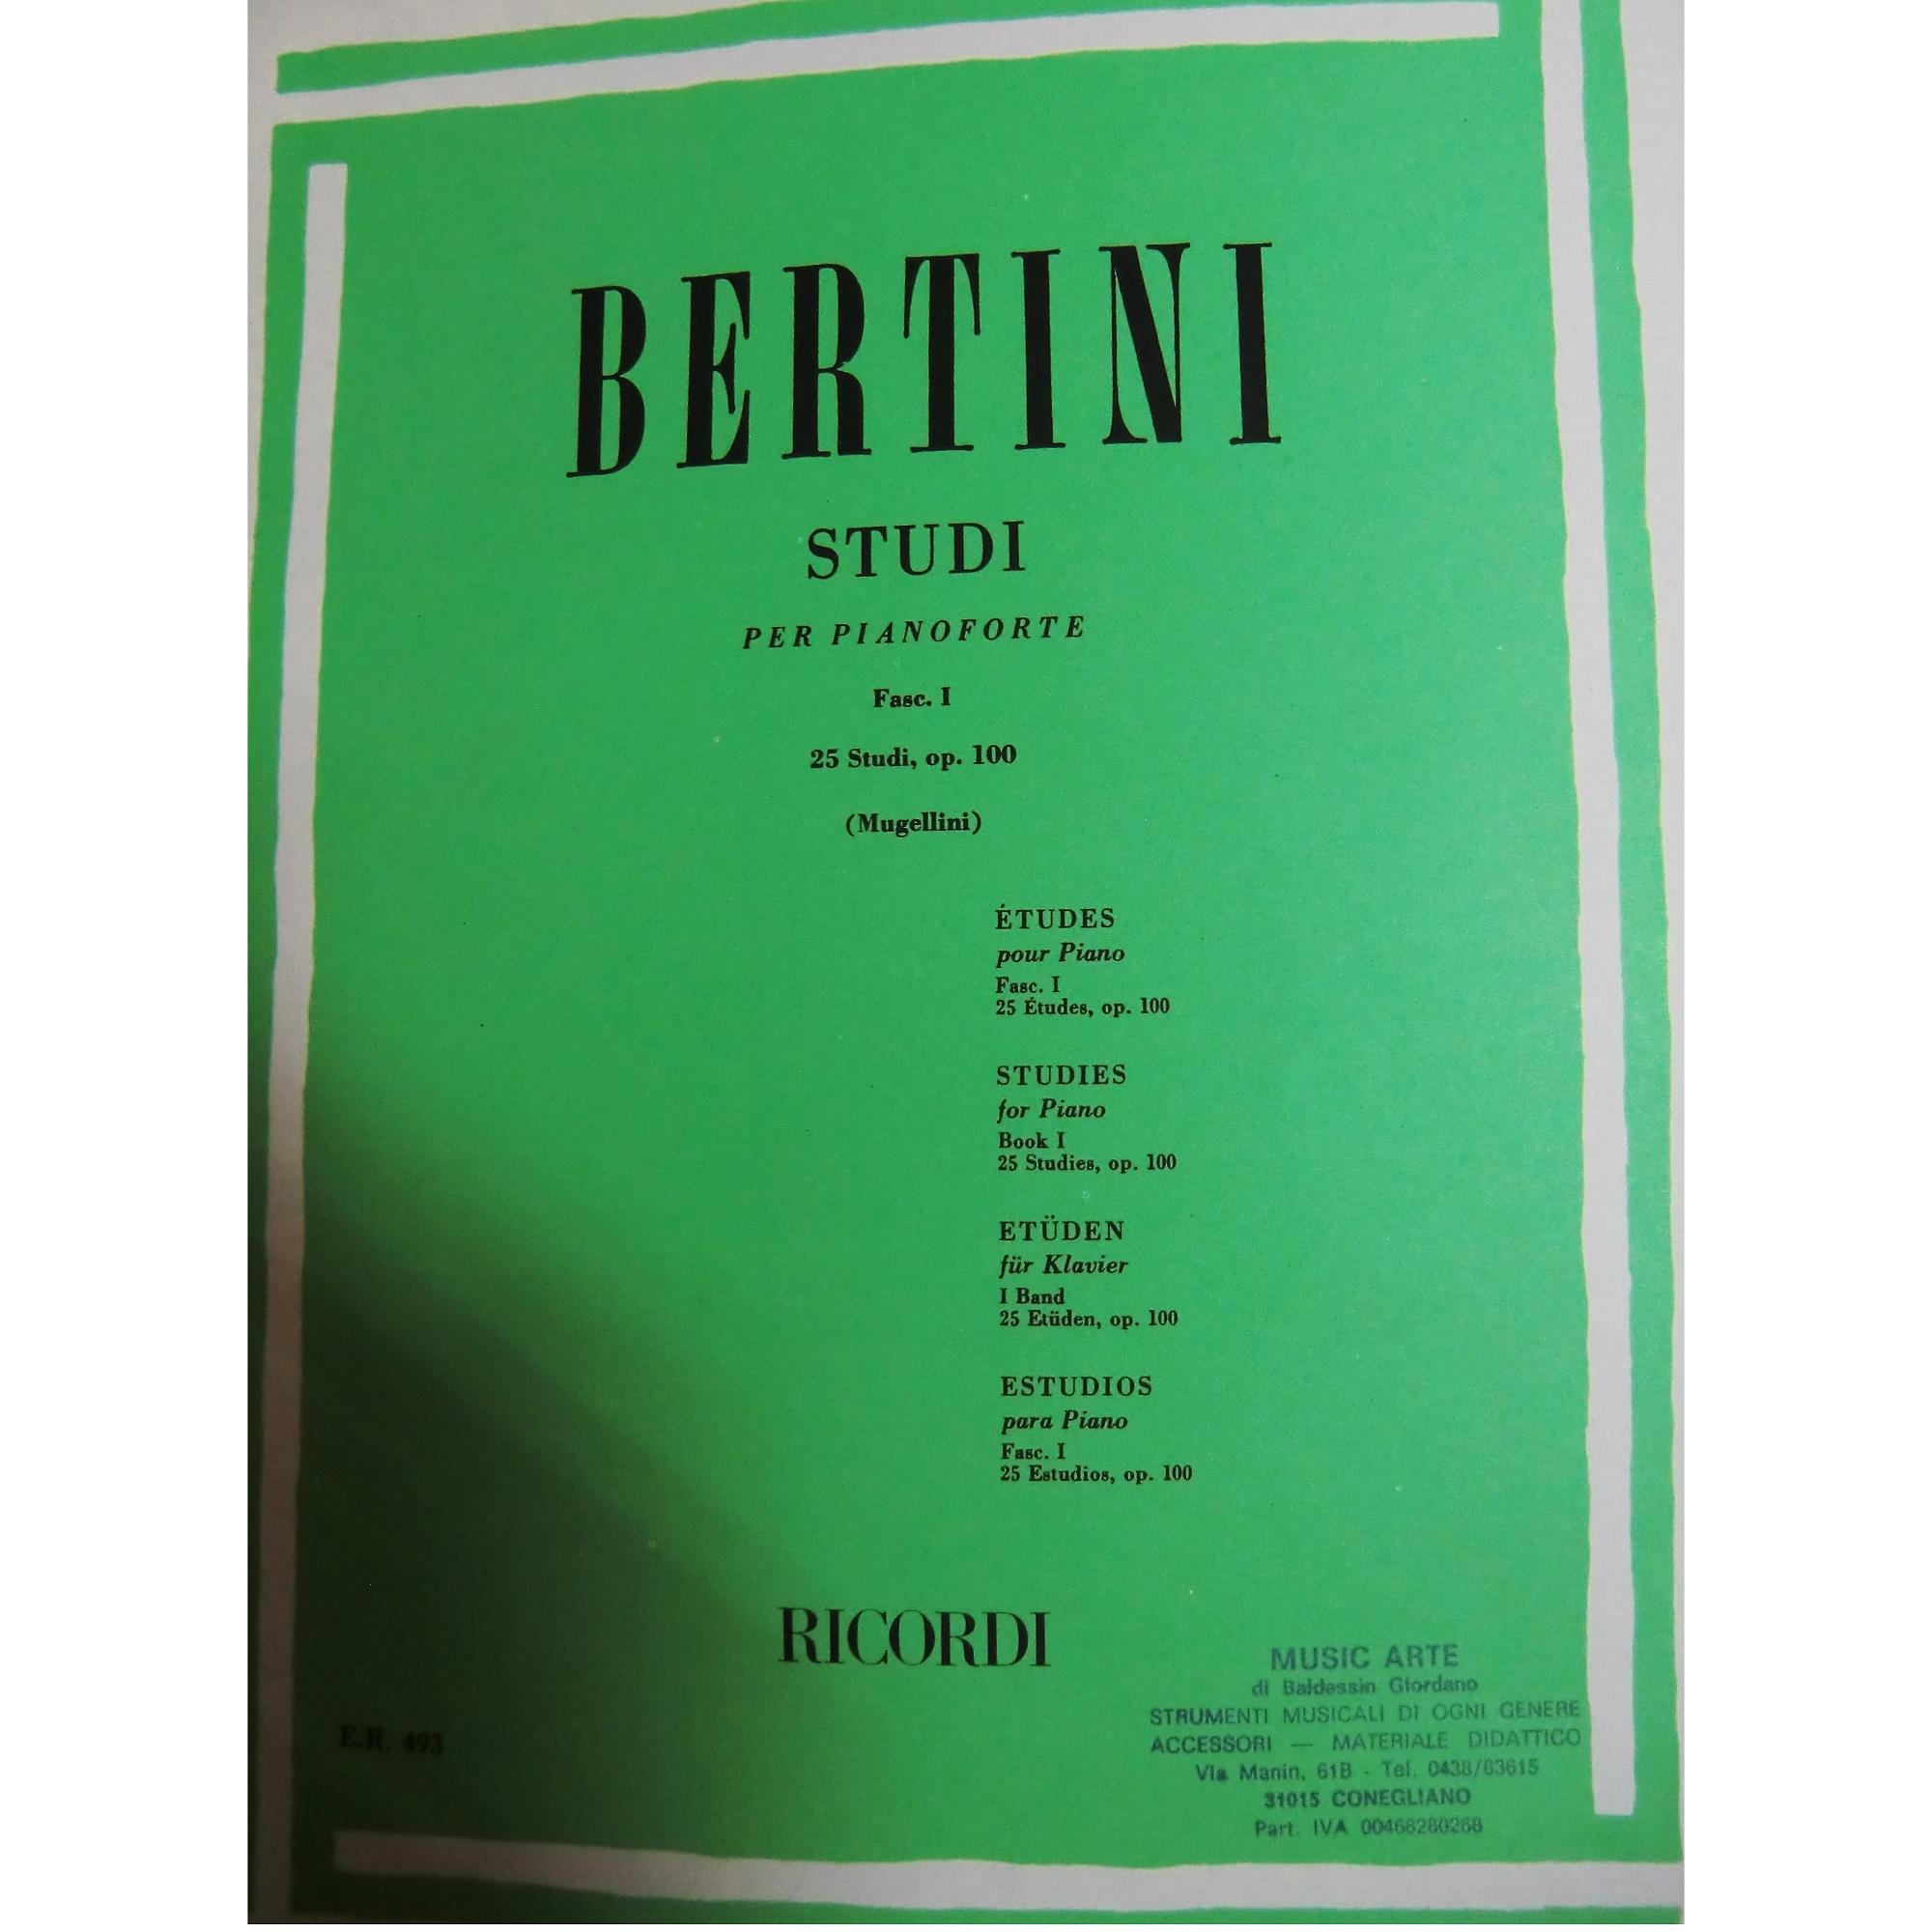 Bertini Studi per pianoforte Fasc. 1 25 studi, op. 100 (Mugellini) Ricordi